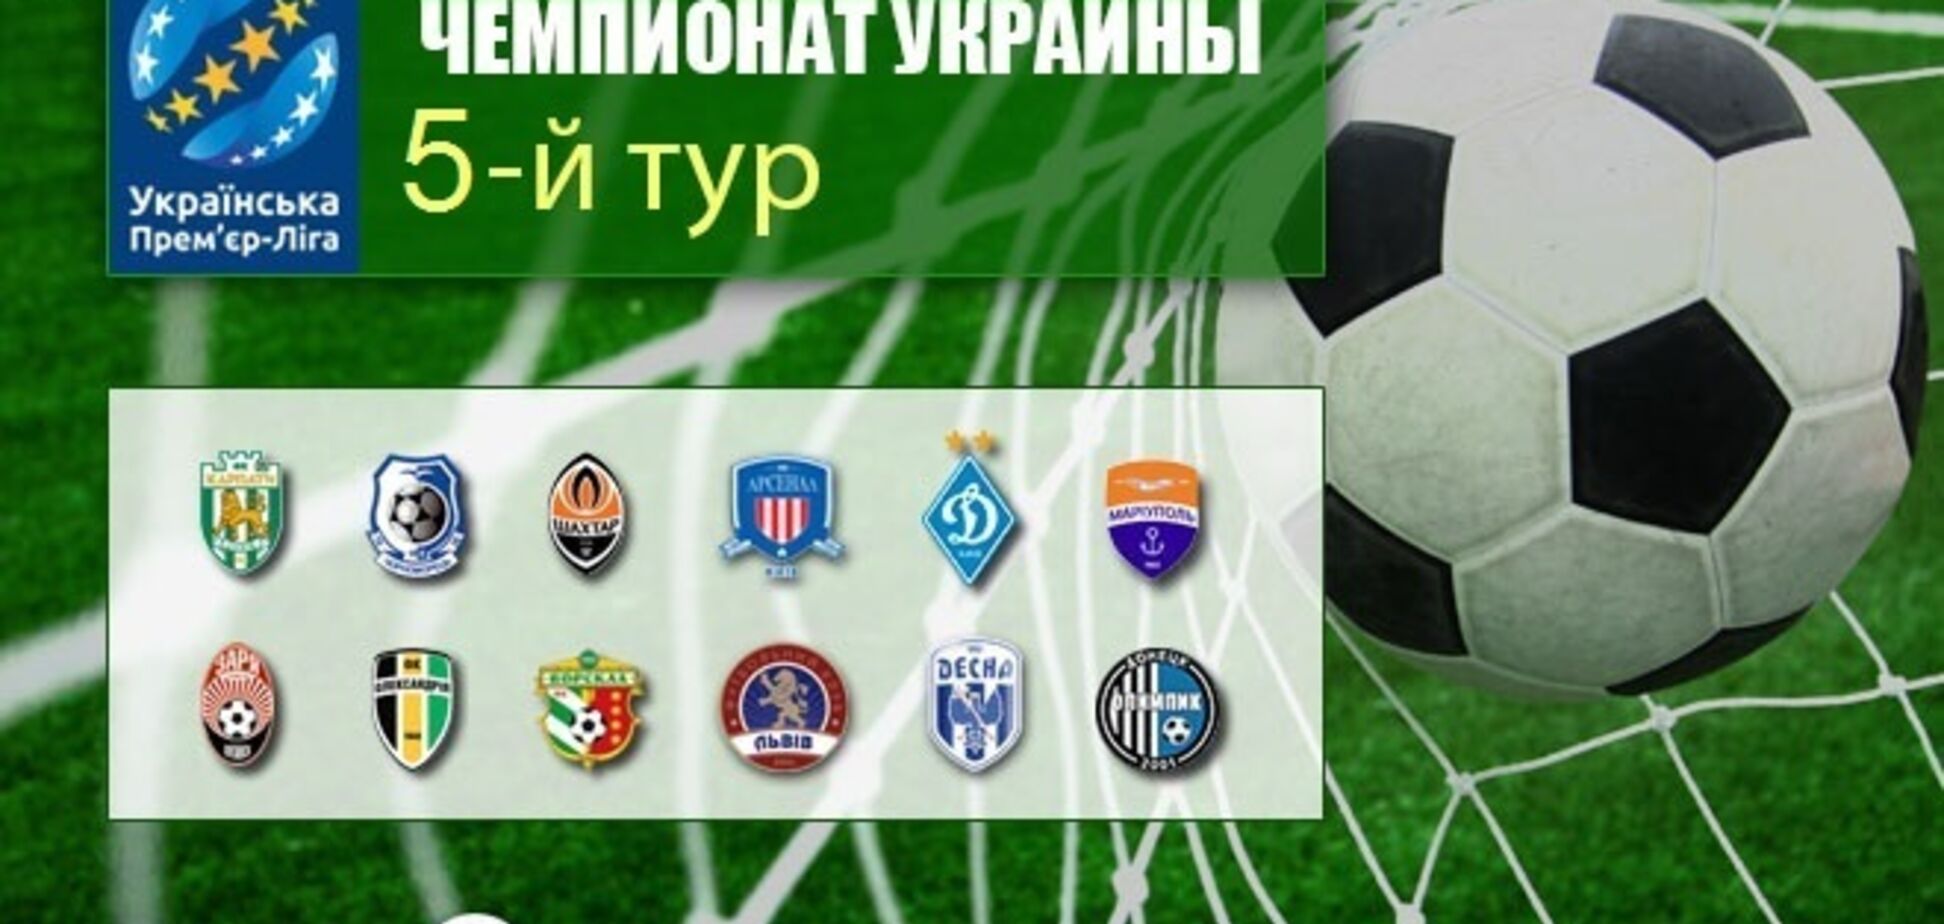 5-й тур чемпіонату України з футболу: результати та огляди